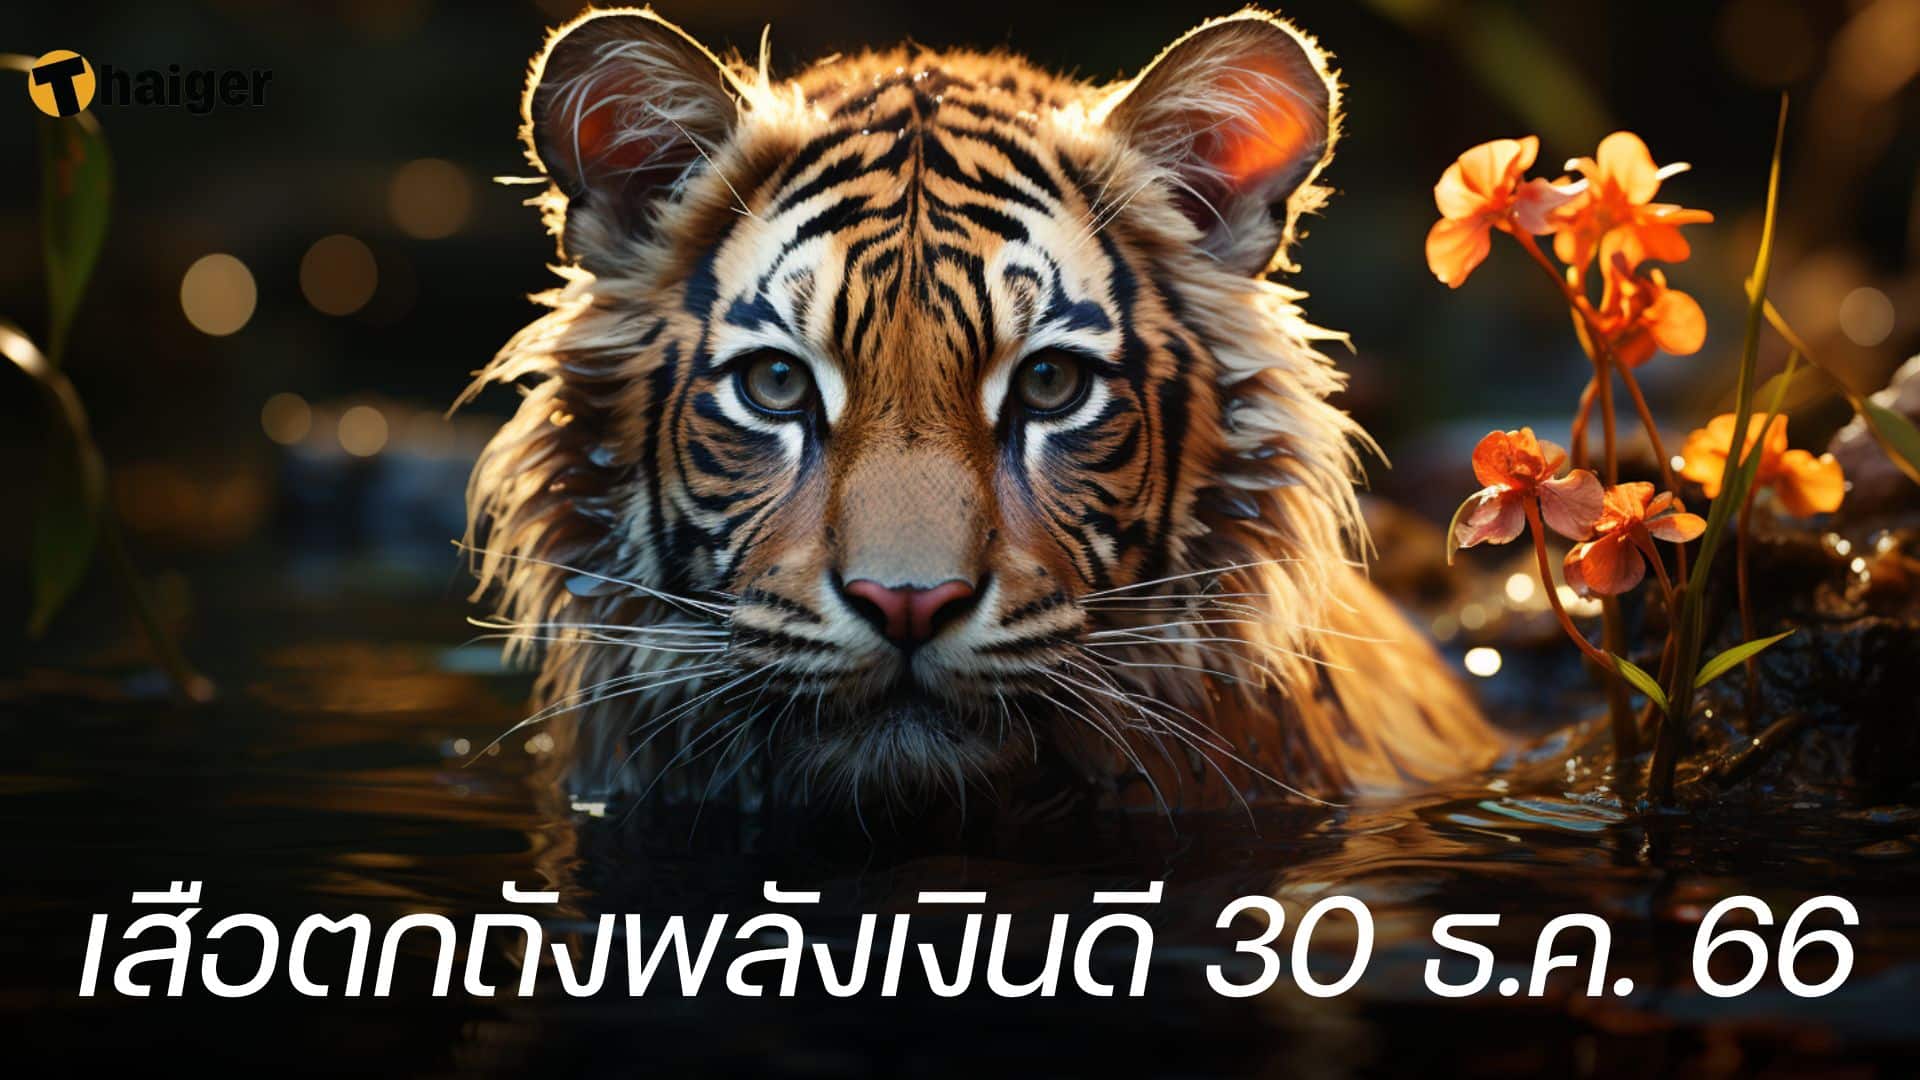 เลขเด็ดปีใหม่ เสือตกถังพลังเงินดี 30 12 66 หวยงวดนี้ เด่นเลขไหนบ้าง | Thaiger ข่าวไทย